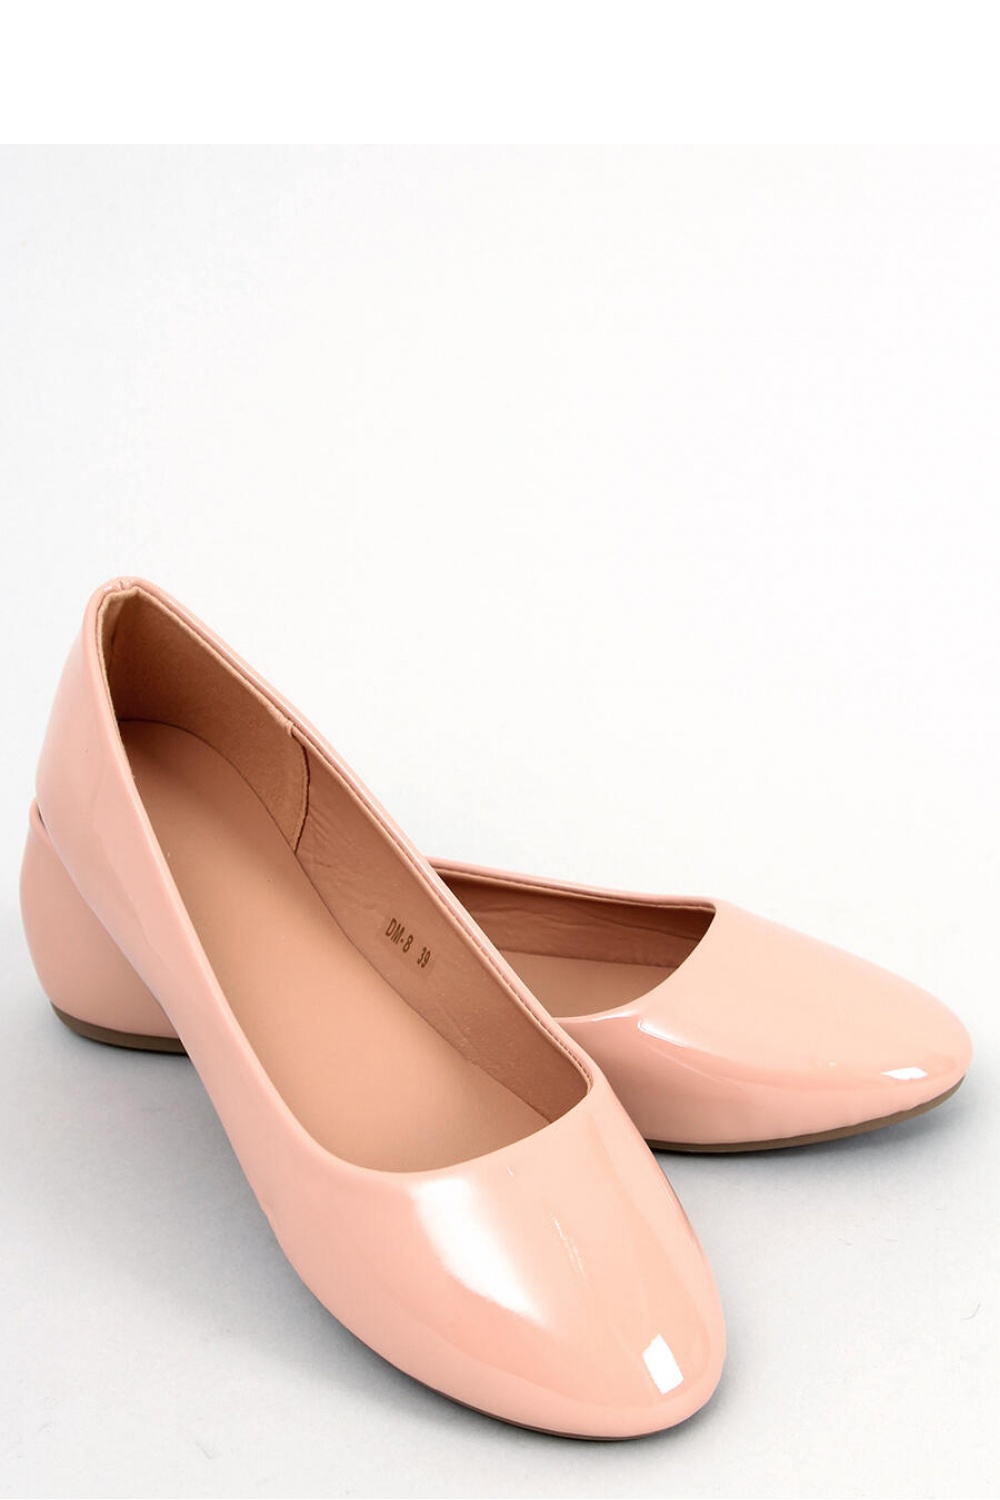 Ballerina Schuhe model 176268 Inello beige Damen